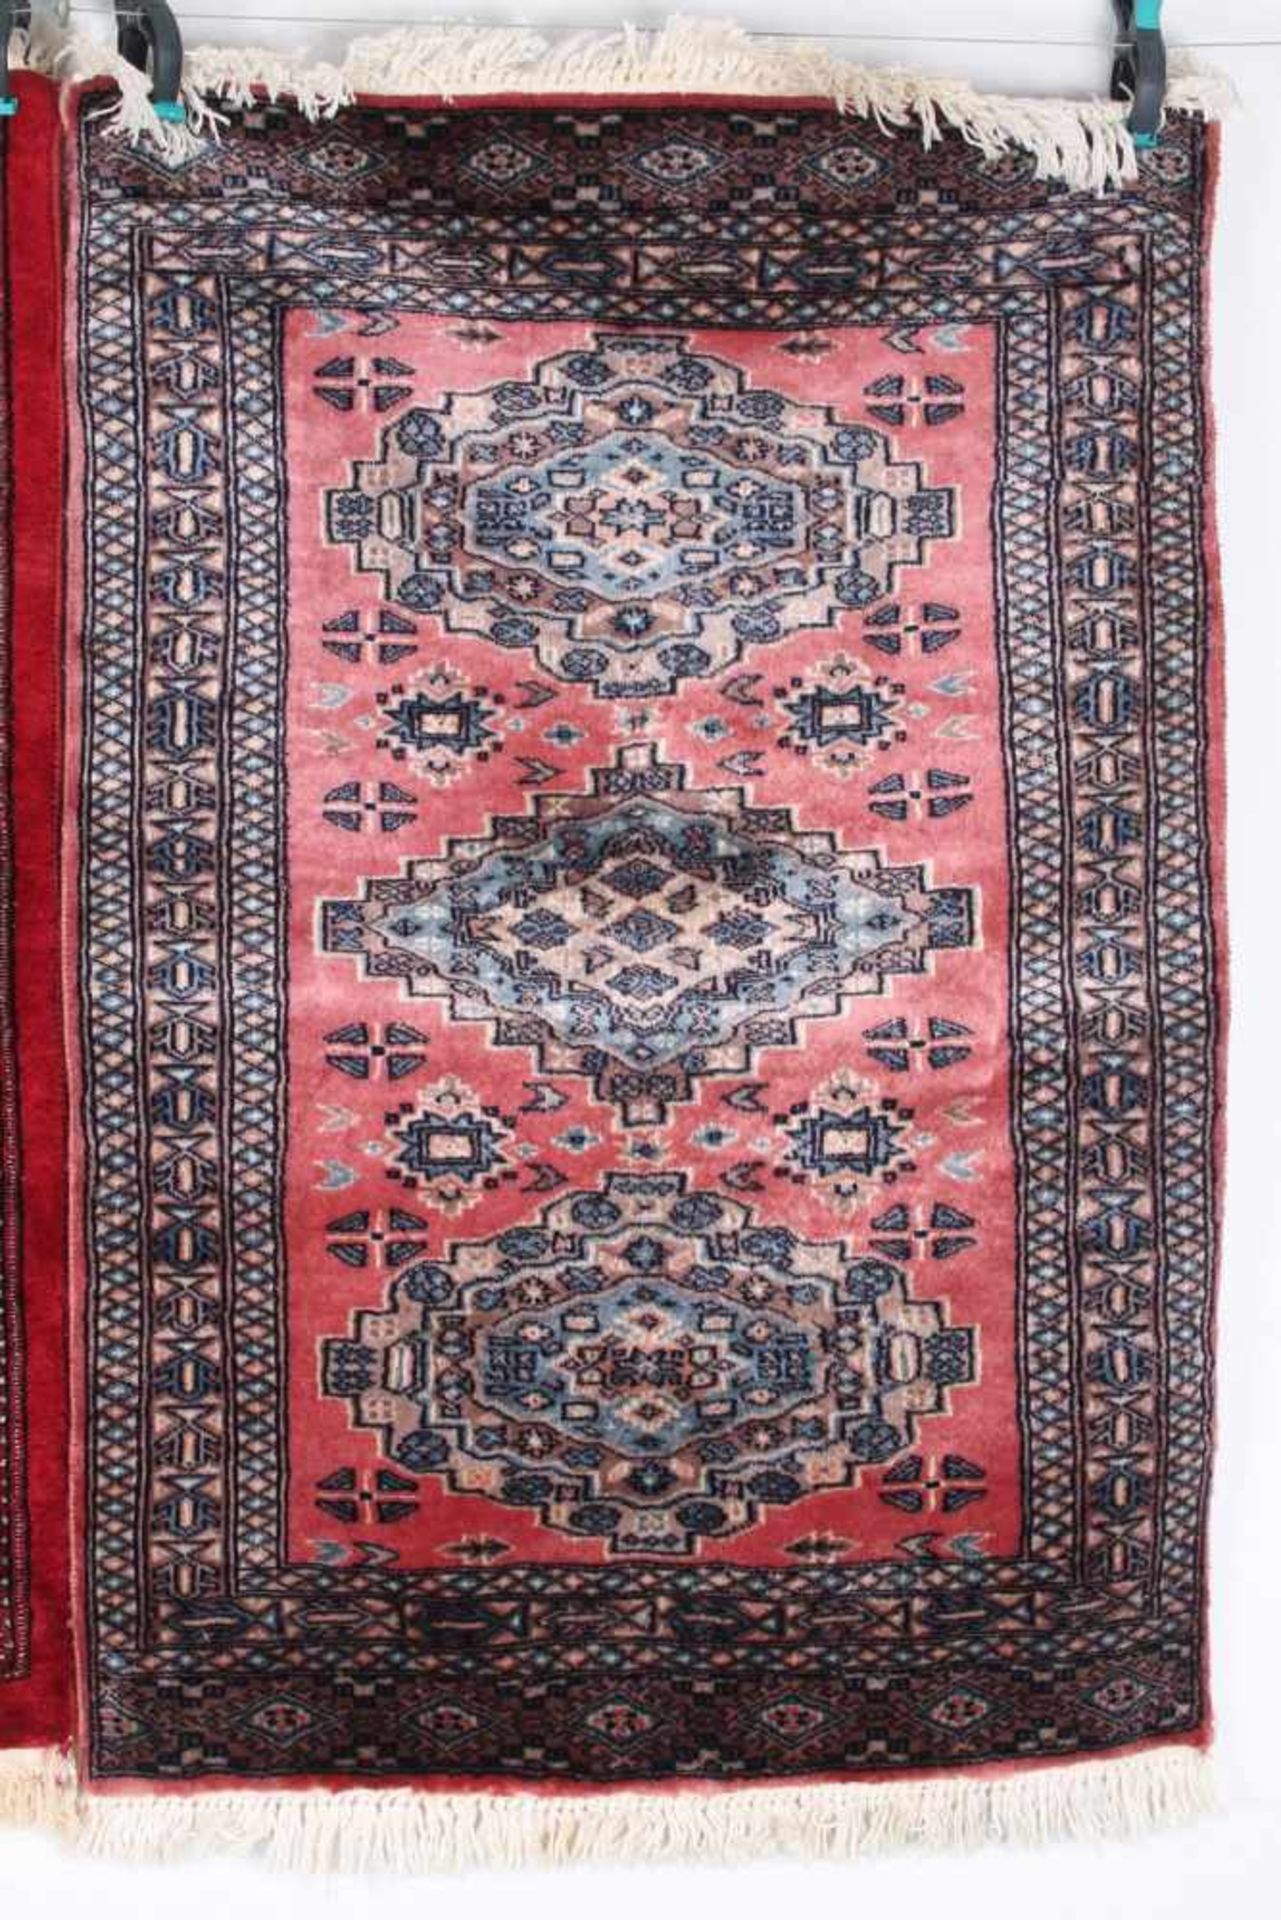 2 Teppiche Kaukasus, handgeknüpfter Teppich, Wolle, 116x79cm / 114x79cm, 6-700.000 Konten pro qm., - Bild 3 aus 5